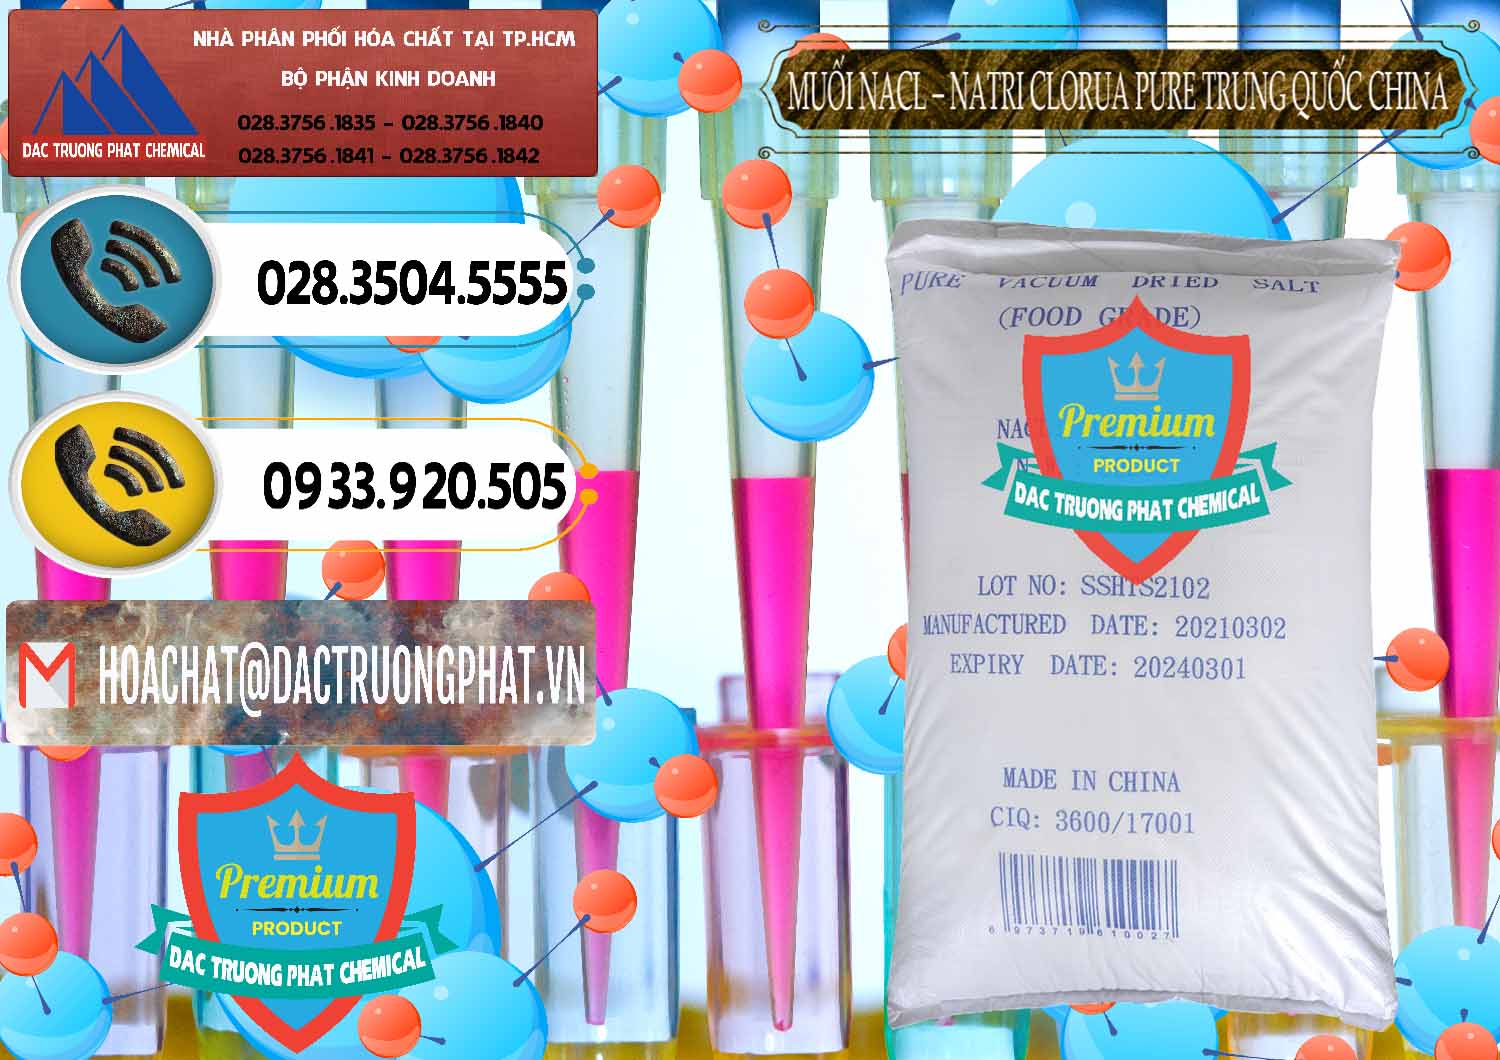 Đơn vị chuyên cung cấp ( bán ) Muối NaCL – Sodium Chloride Pure Trung Quốc China - 0230 - Nhà cung cấp - kinh doanh hóa chất tại TP.HCM - hoachatdetnhuom.vn